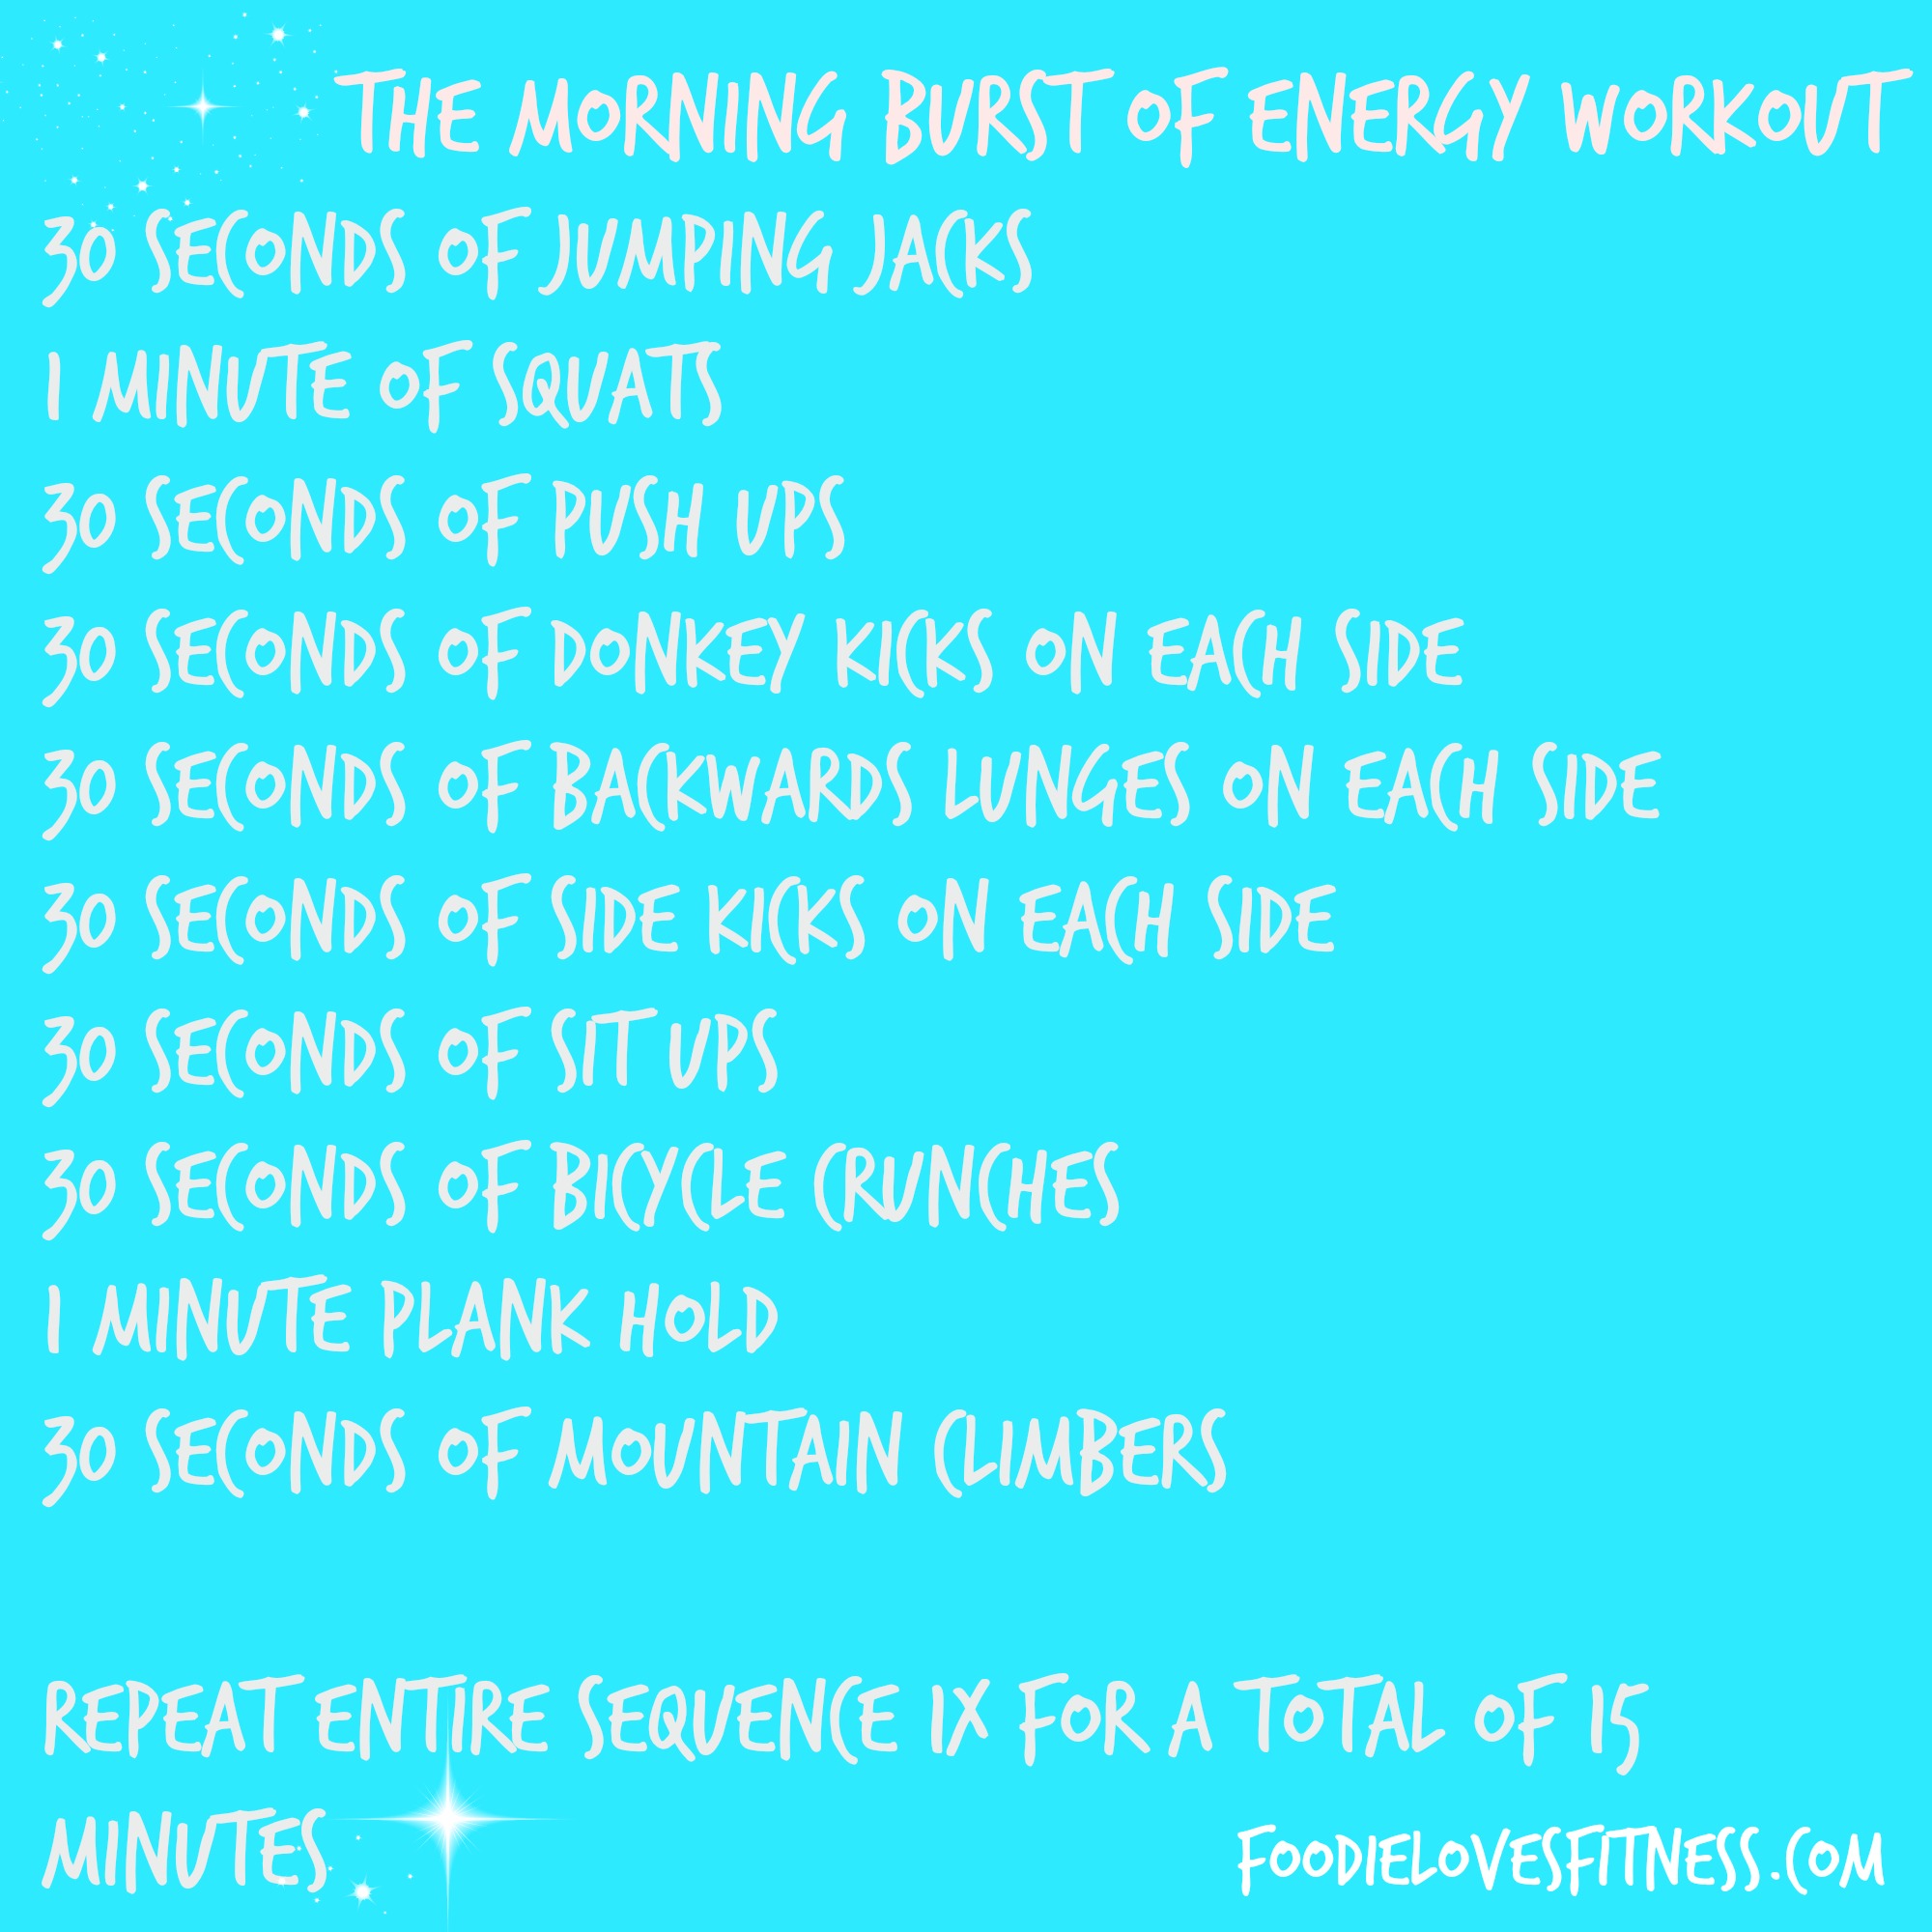 Morning Workout